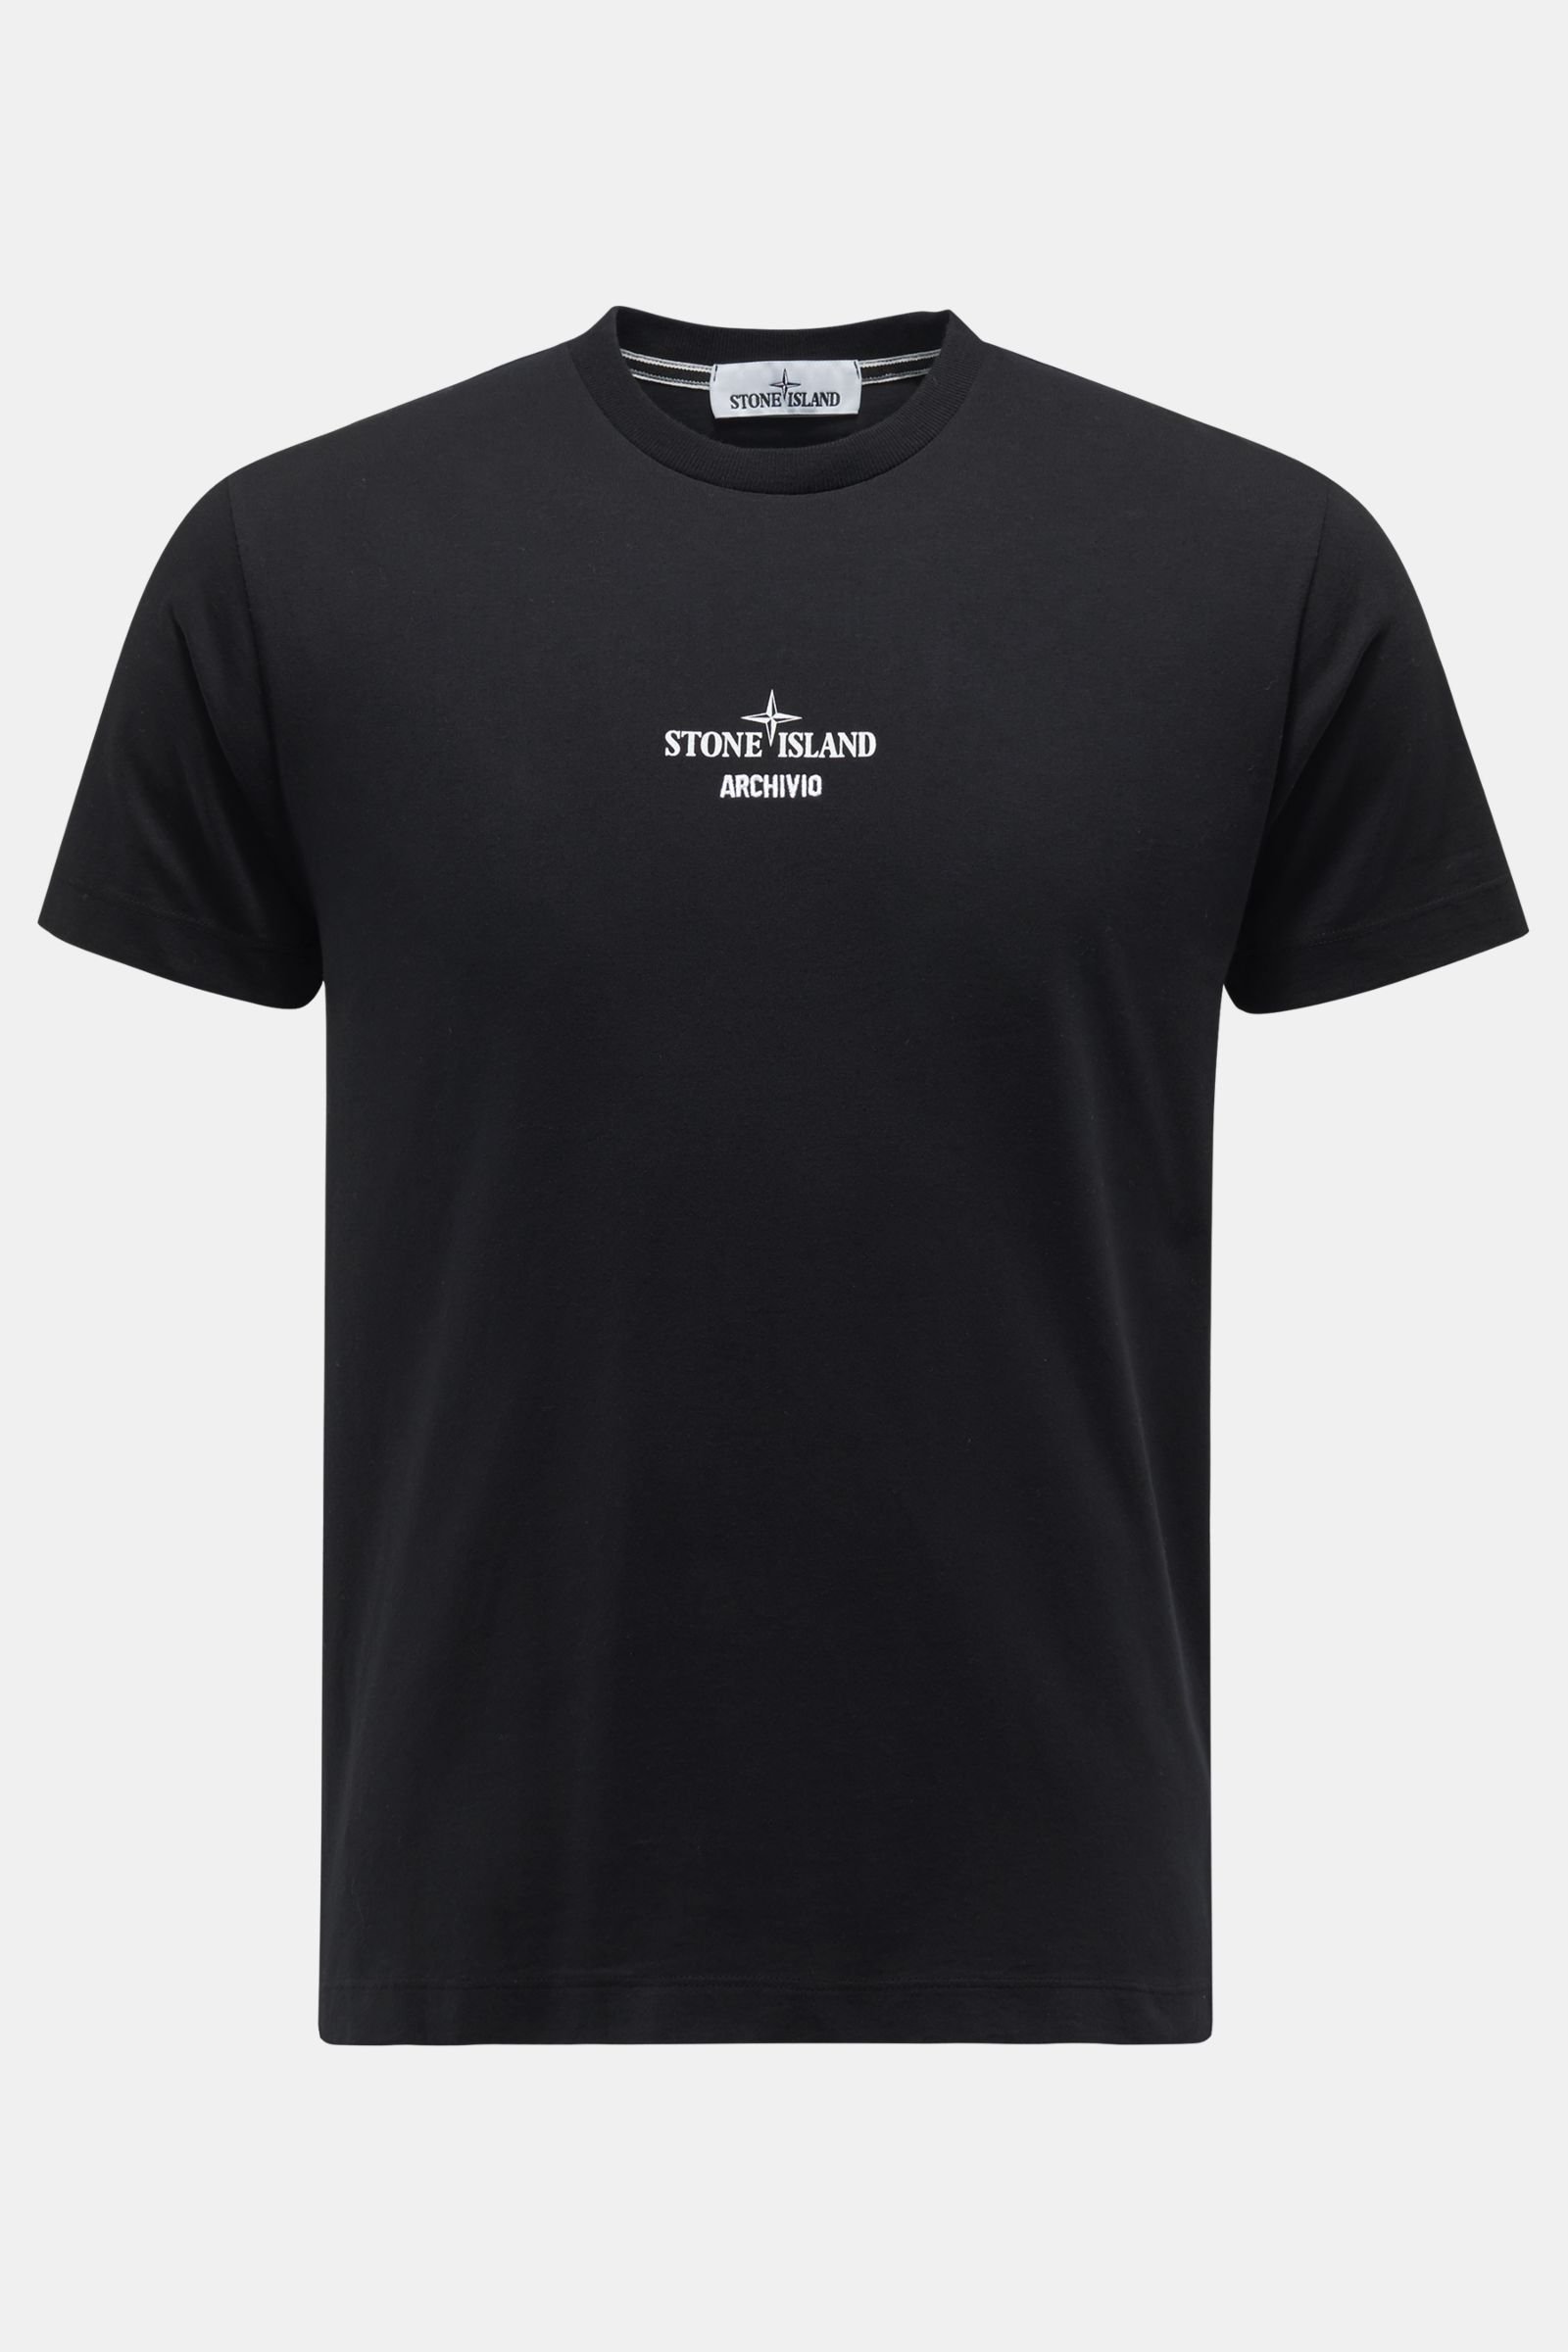 Rundhals-T-Shirt 'Archivio' schwarz